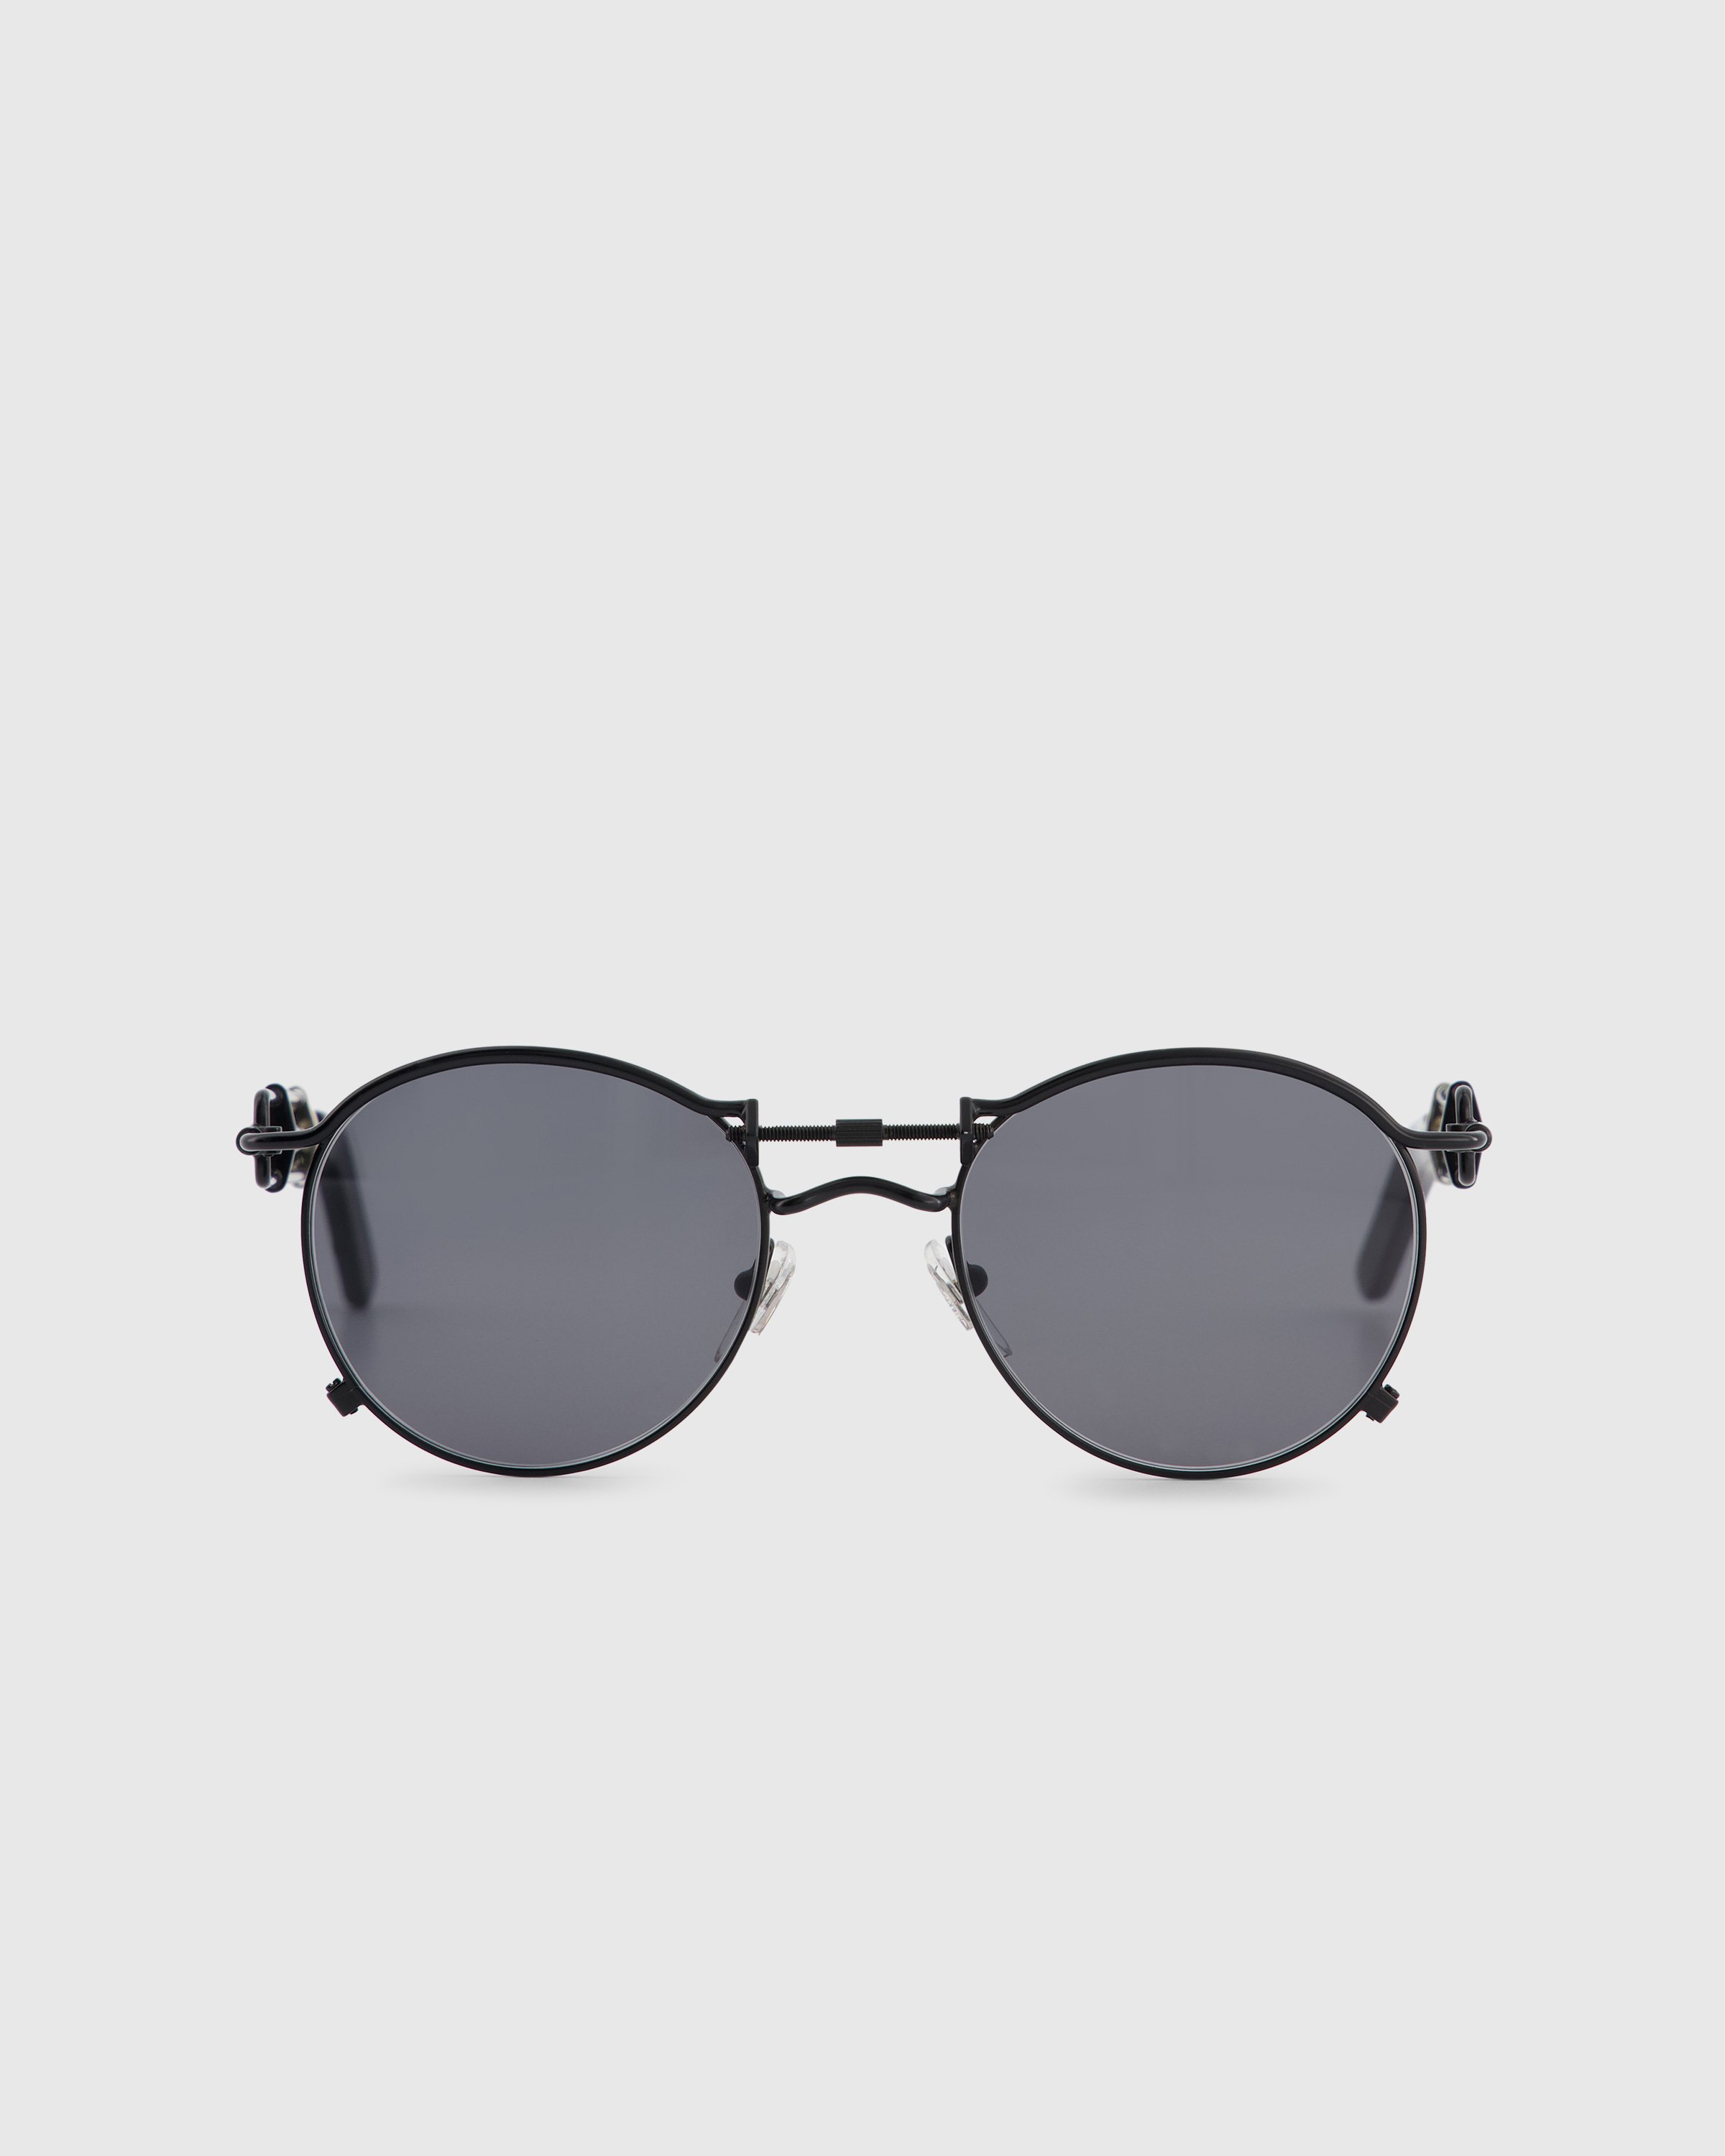 Jean Paul Gaultier x Burna Boy - 56-0174 Pas De Vis Sunglasses Black - Accessories - Black - Image 1